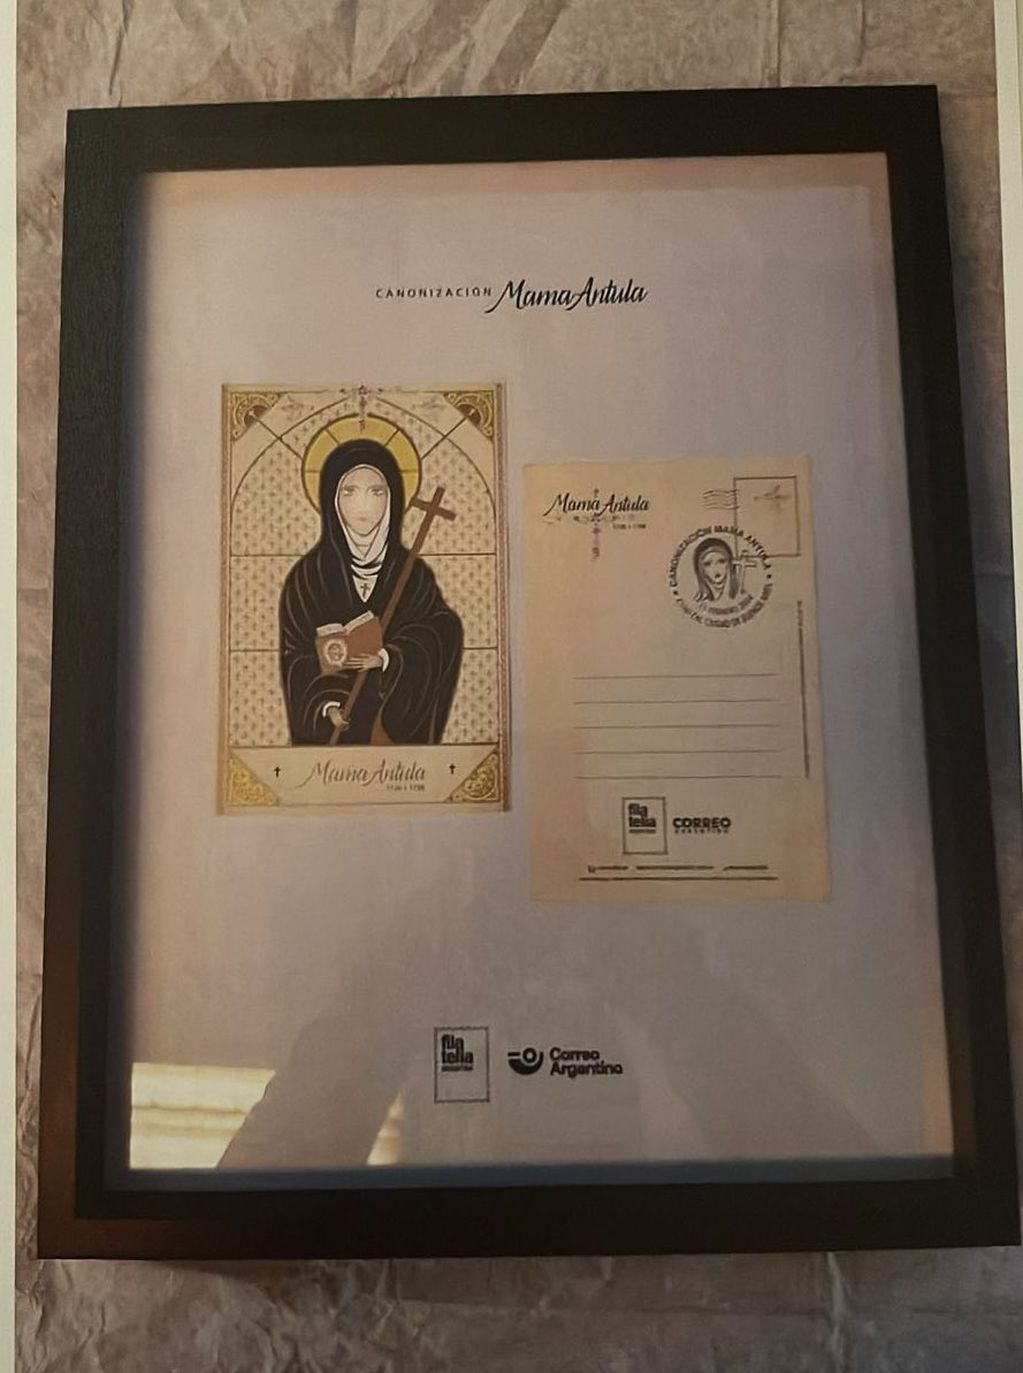 Cuadro con la postal conmemorativa de Mamá Antula que el Correo Argentino distribuyó en ocasión de su beatificación. Foto: X / @madorni